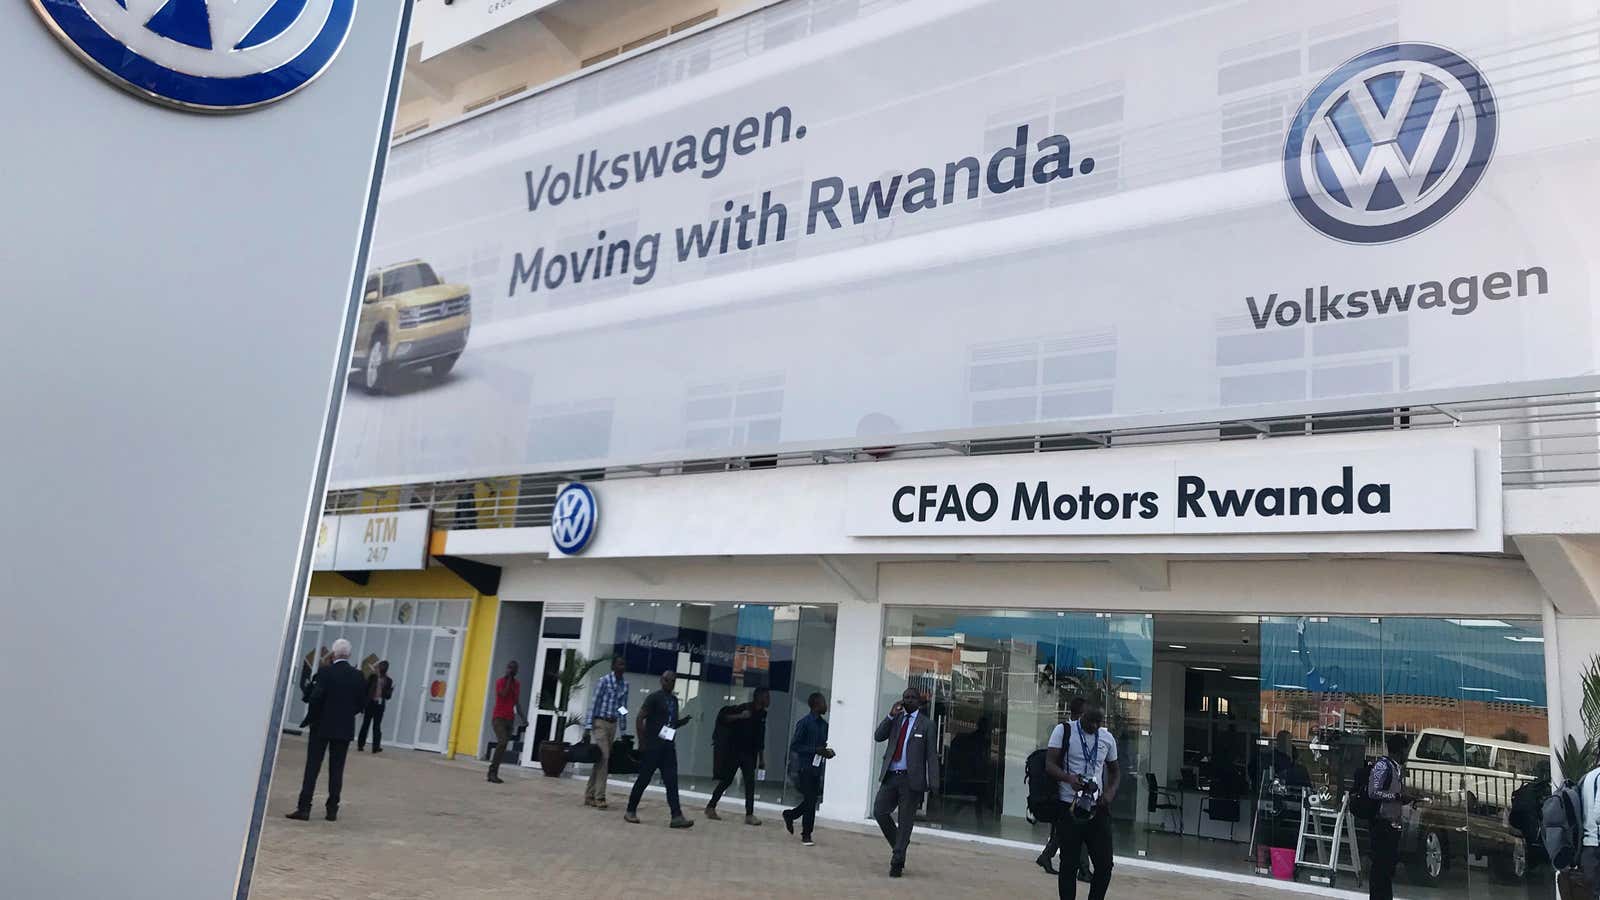 VW moves Rwanda.